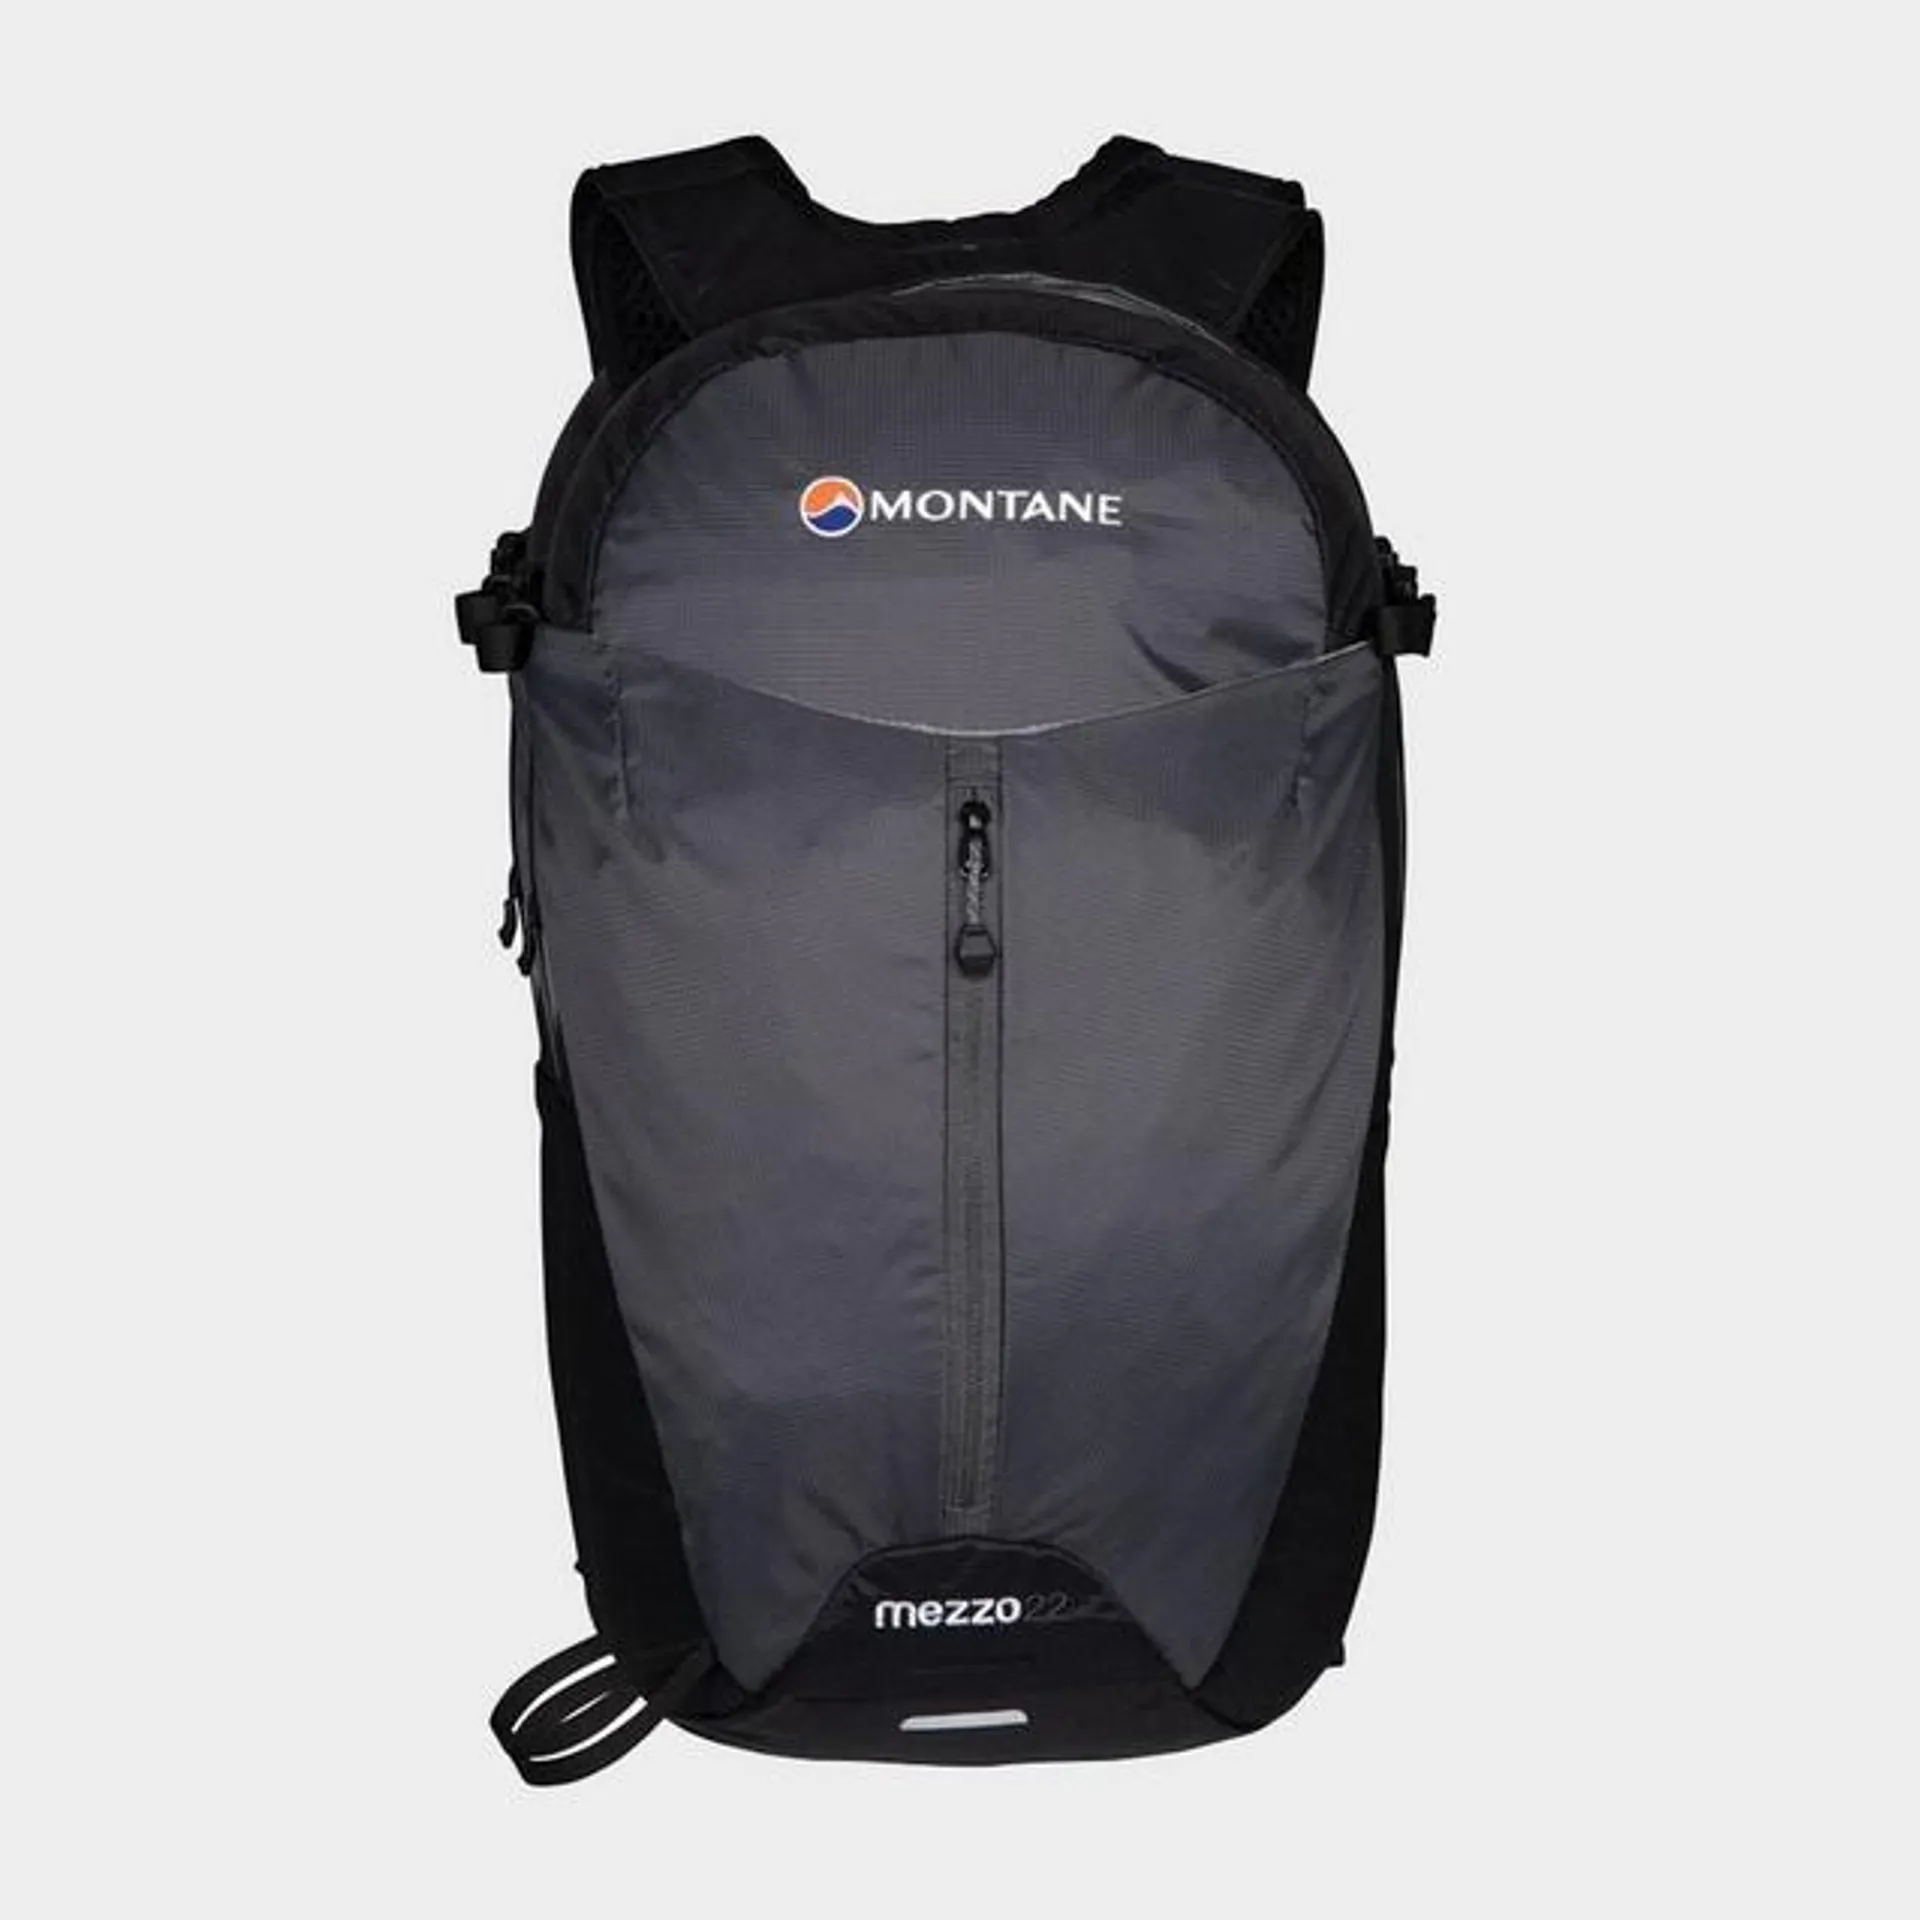 Mezzo 22 Backpack